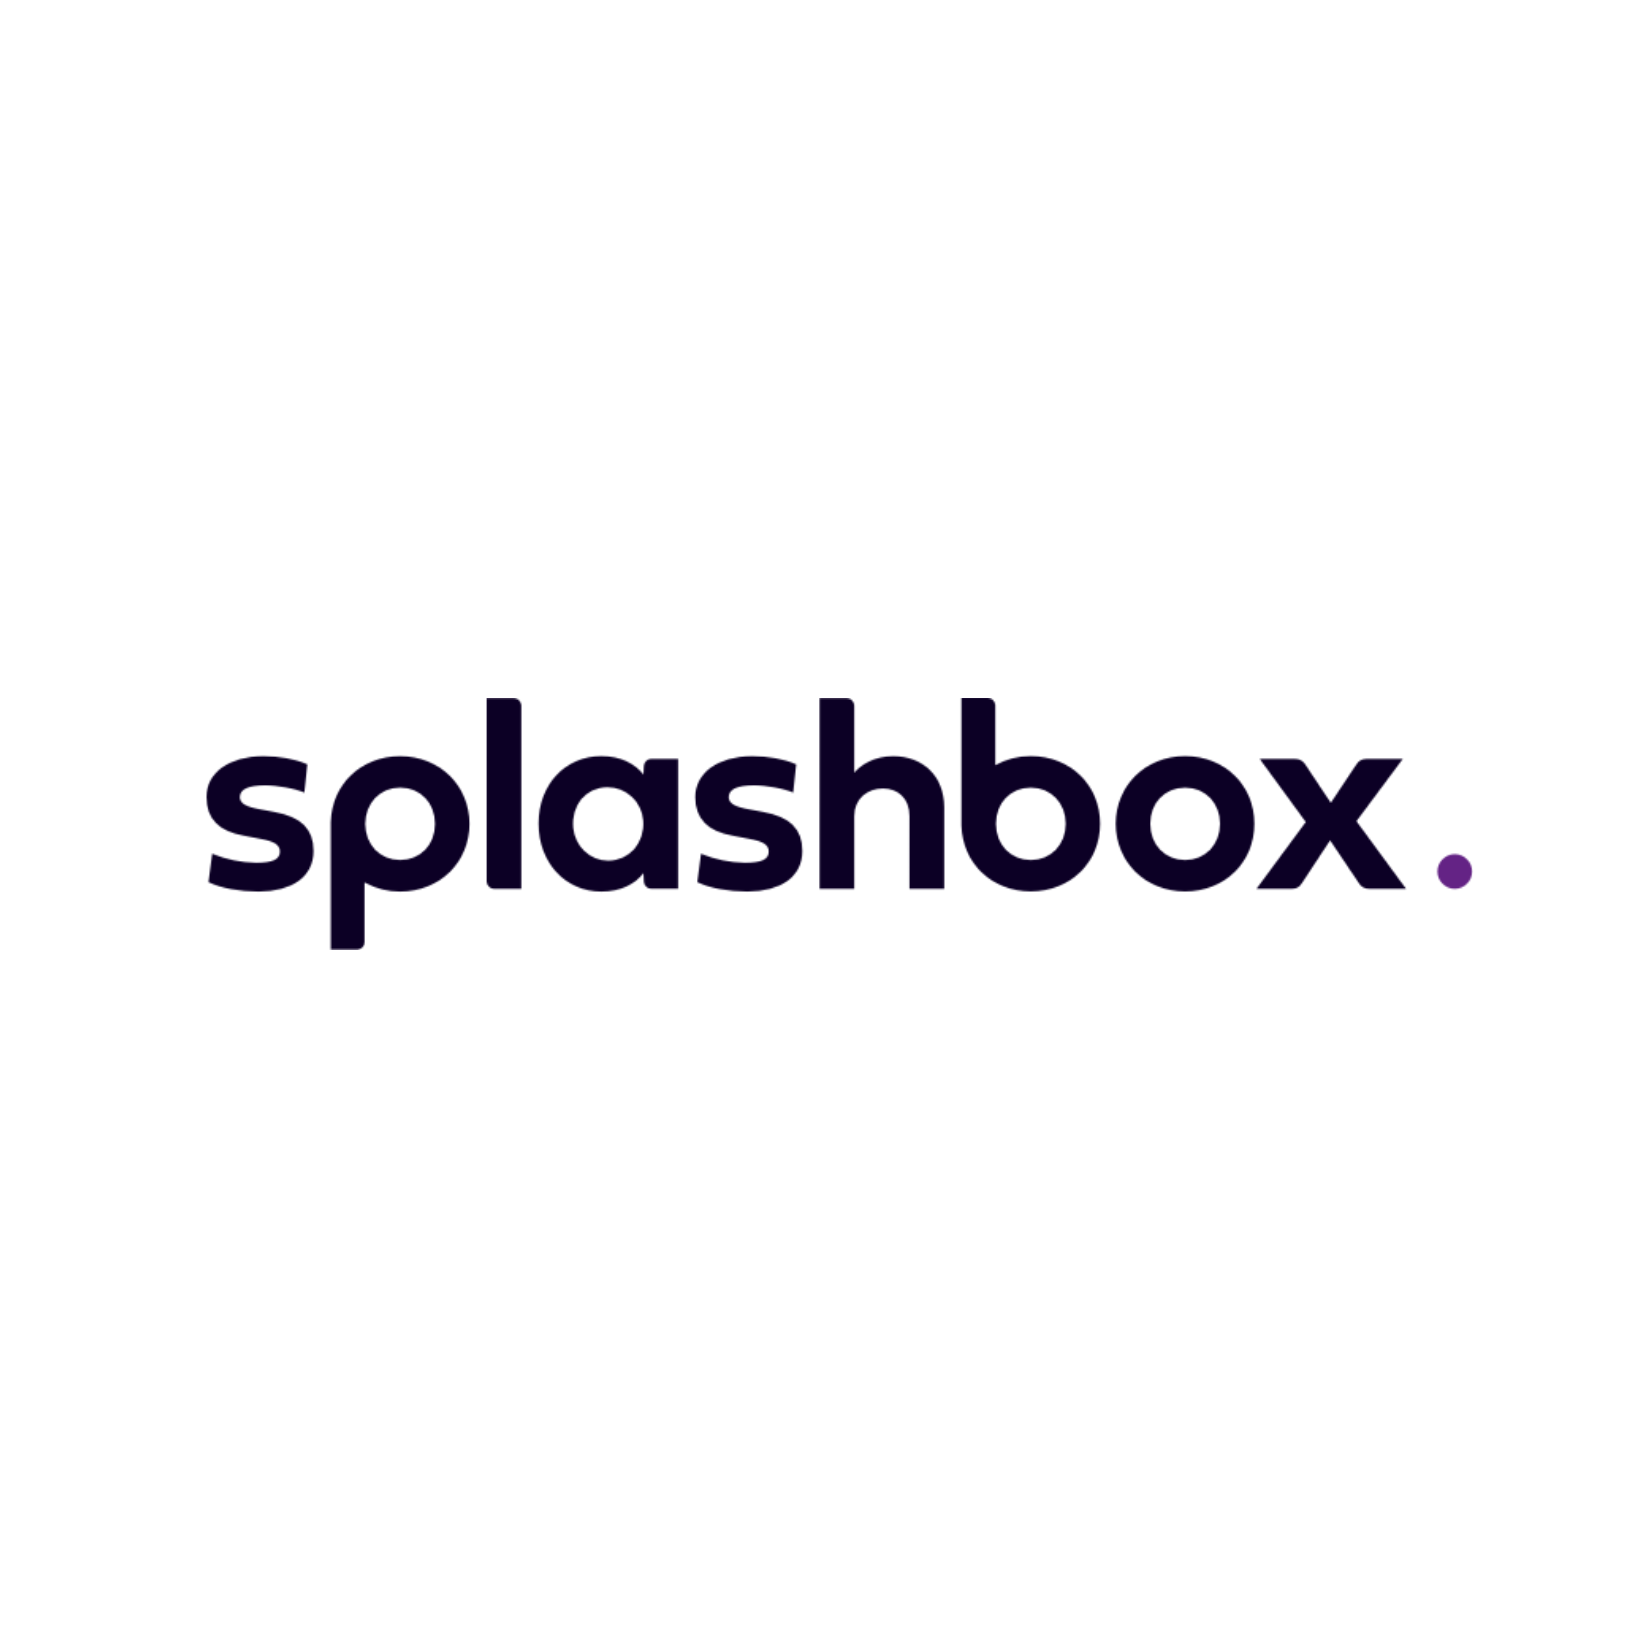 Splashbox